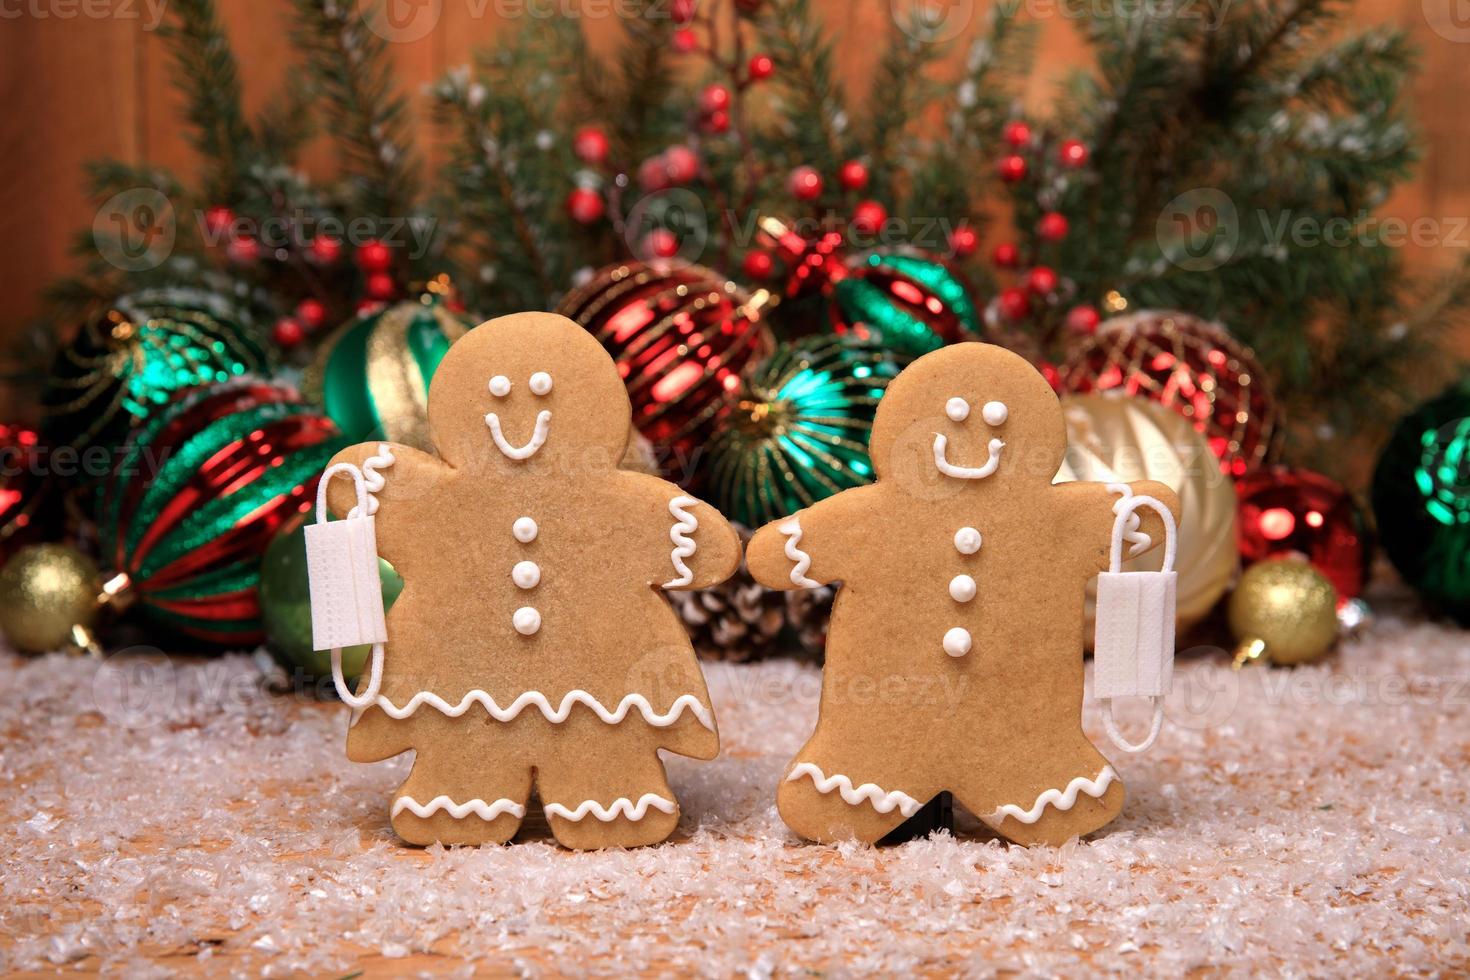 família de biscoitos de gengibre com crianças no feriado de fundo de natal foto